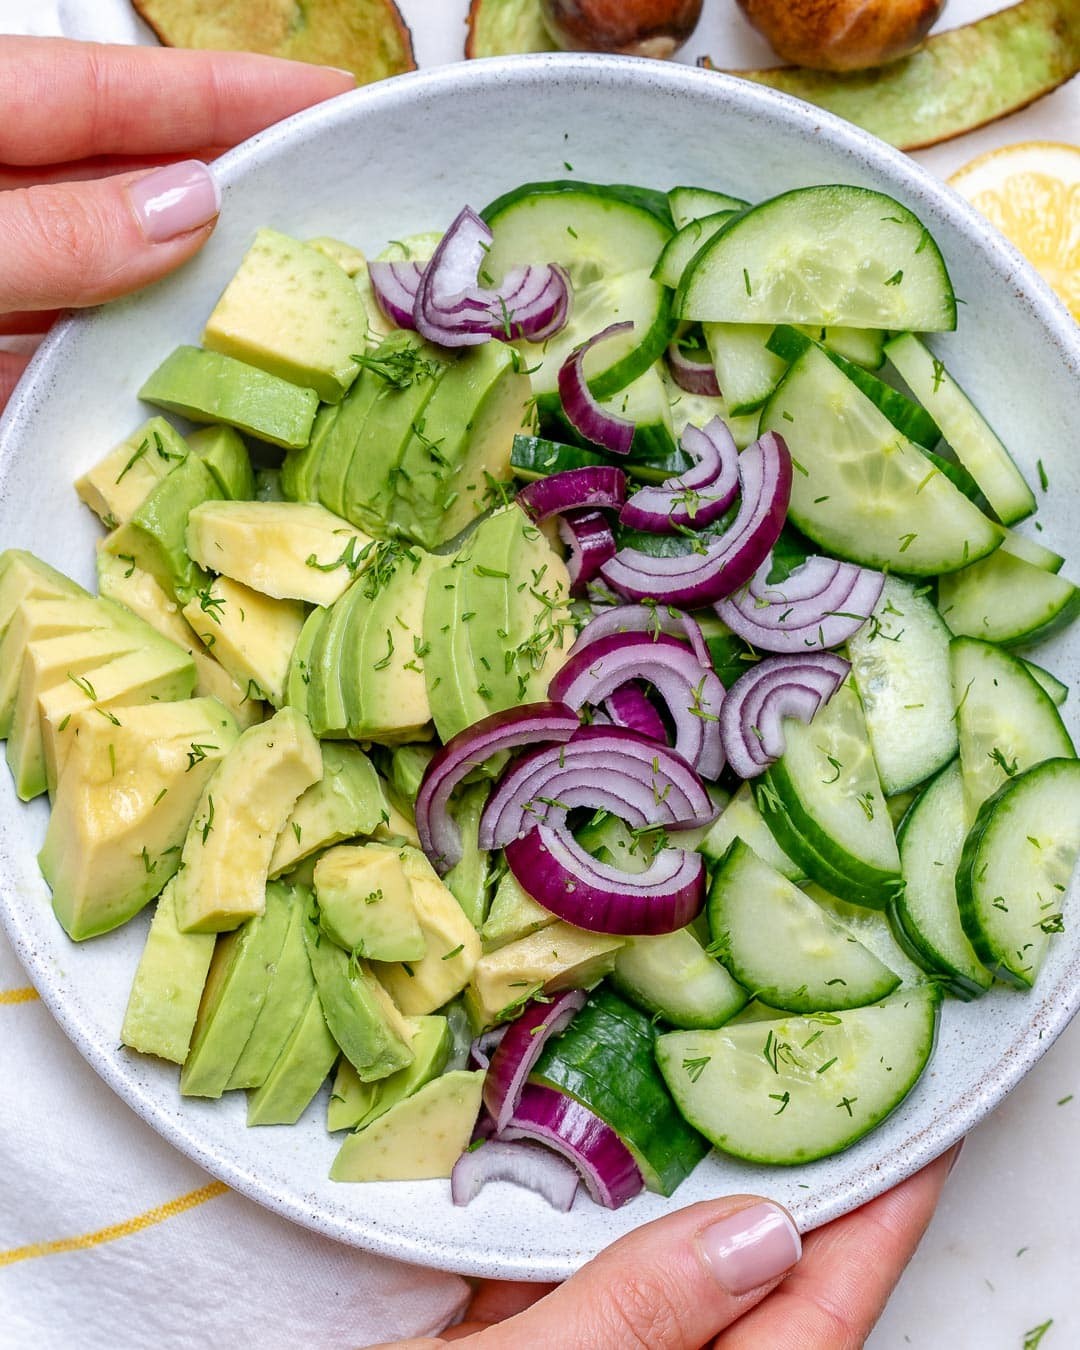 Salad dưa leo và bơ tuy dễ thực hiện nhưng có giá trị dinh dưỡng cao